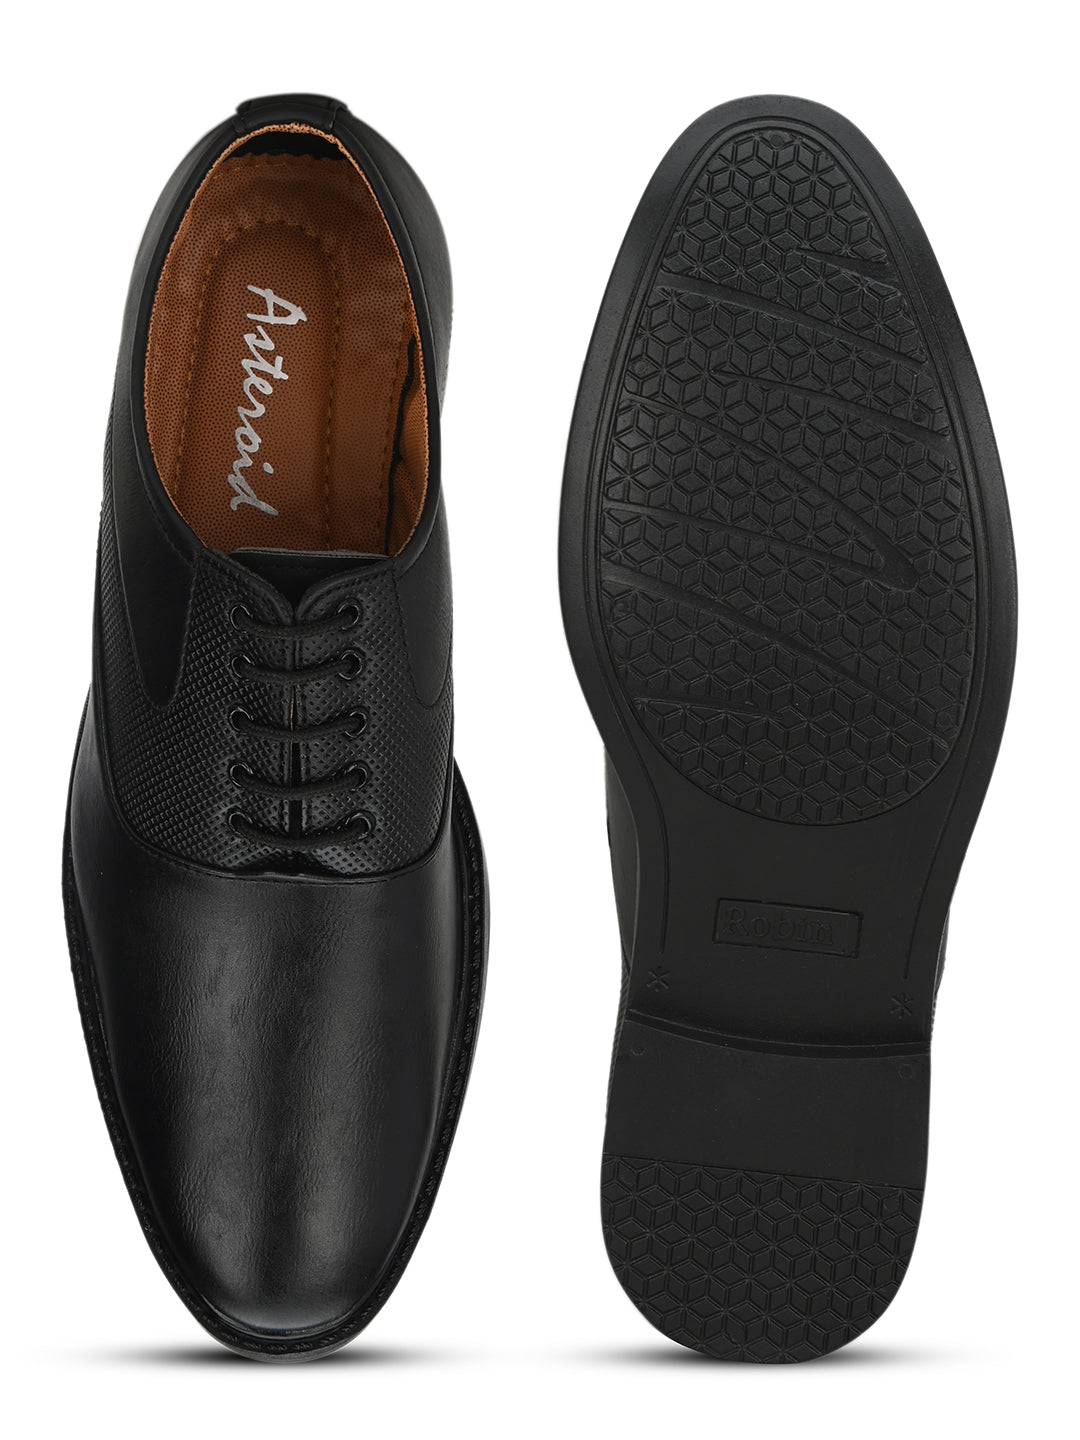 Men's Formal Derby Shoes.